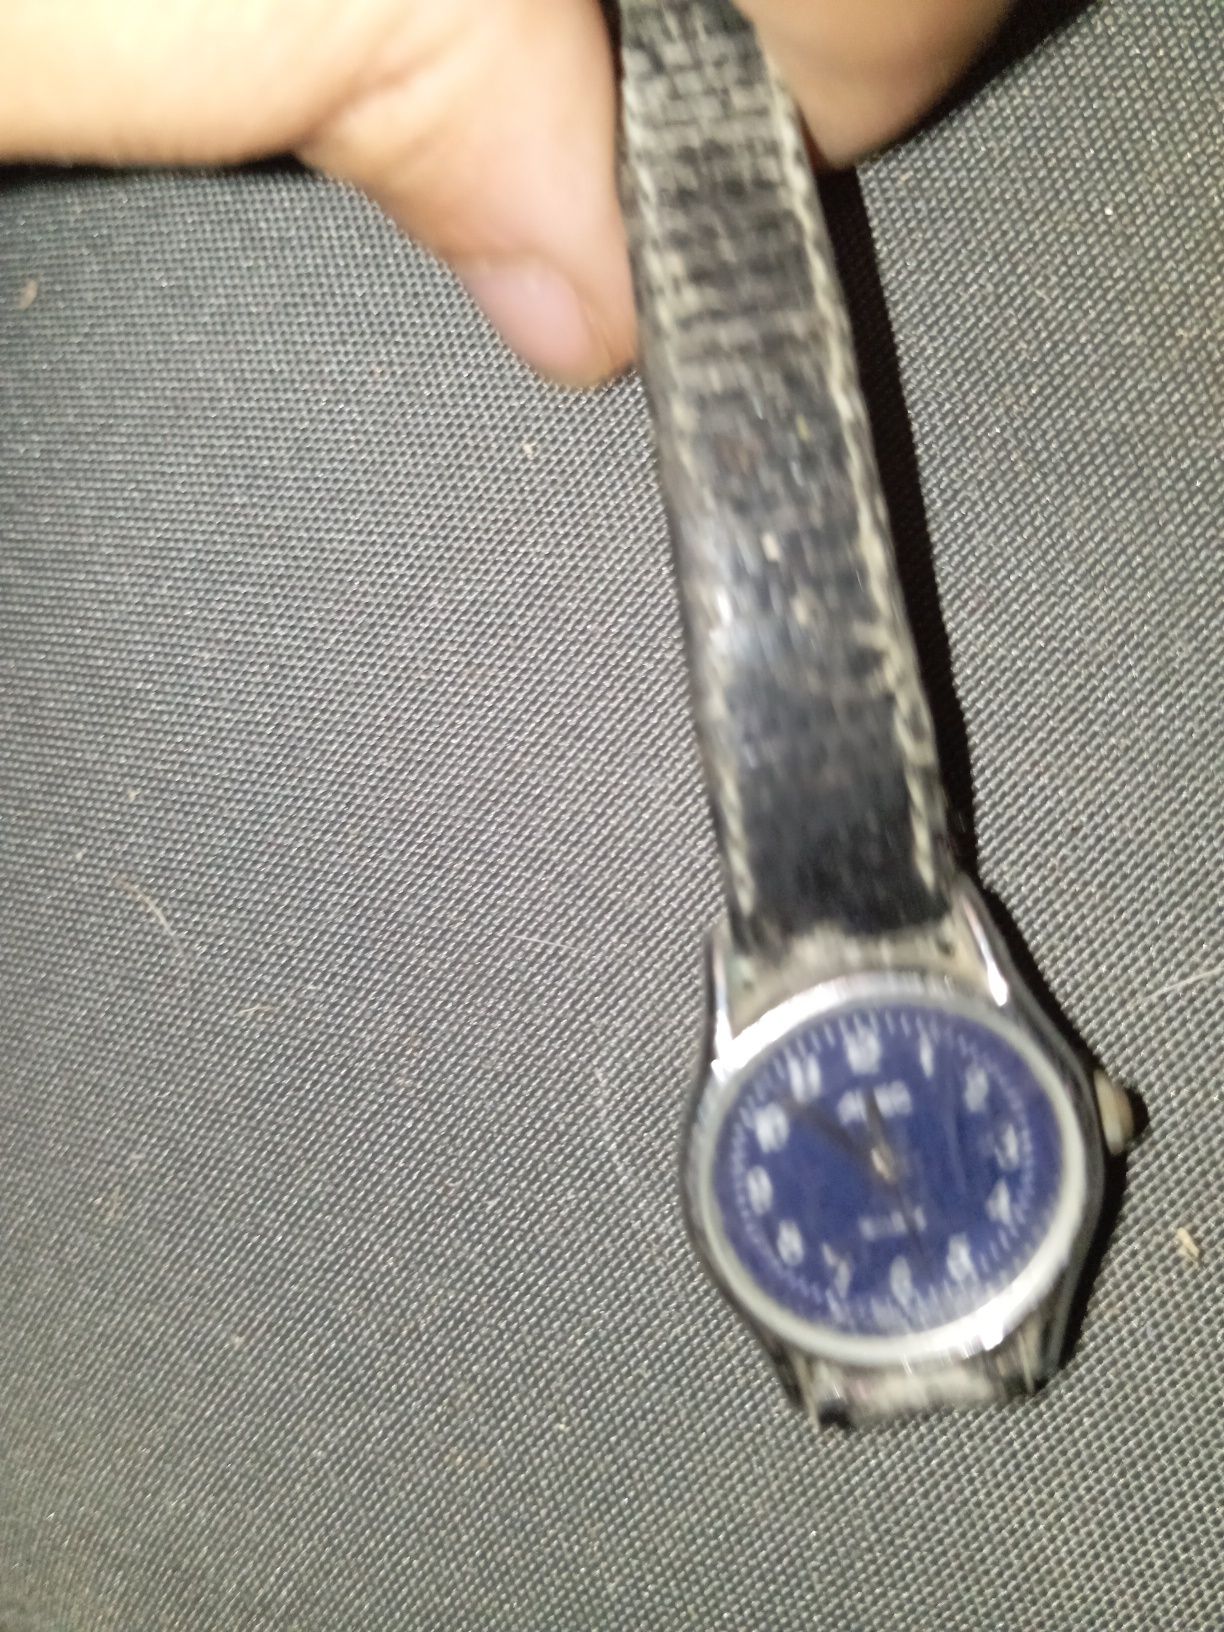 Relógio antigo não sei se funciona adec